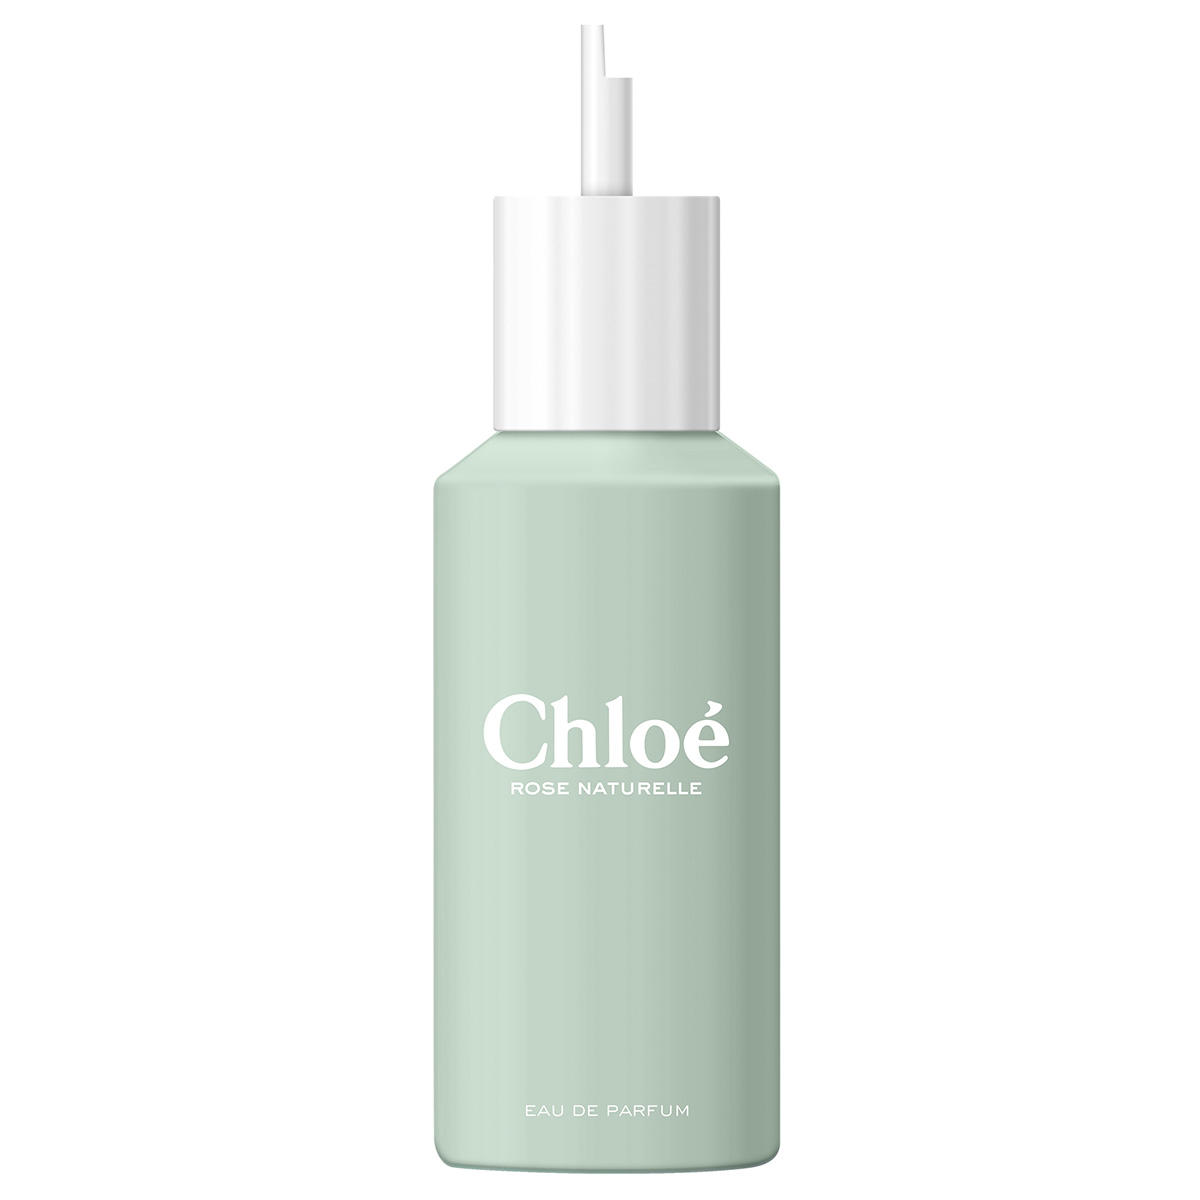 Chloé Rose Naturelle Eau de Parfum Refill 150 ml - 1